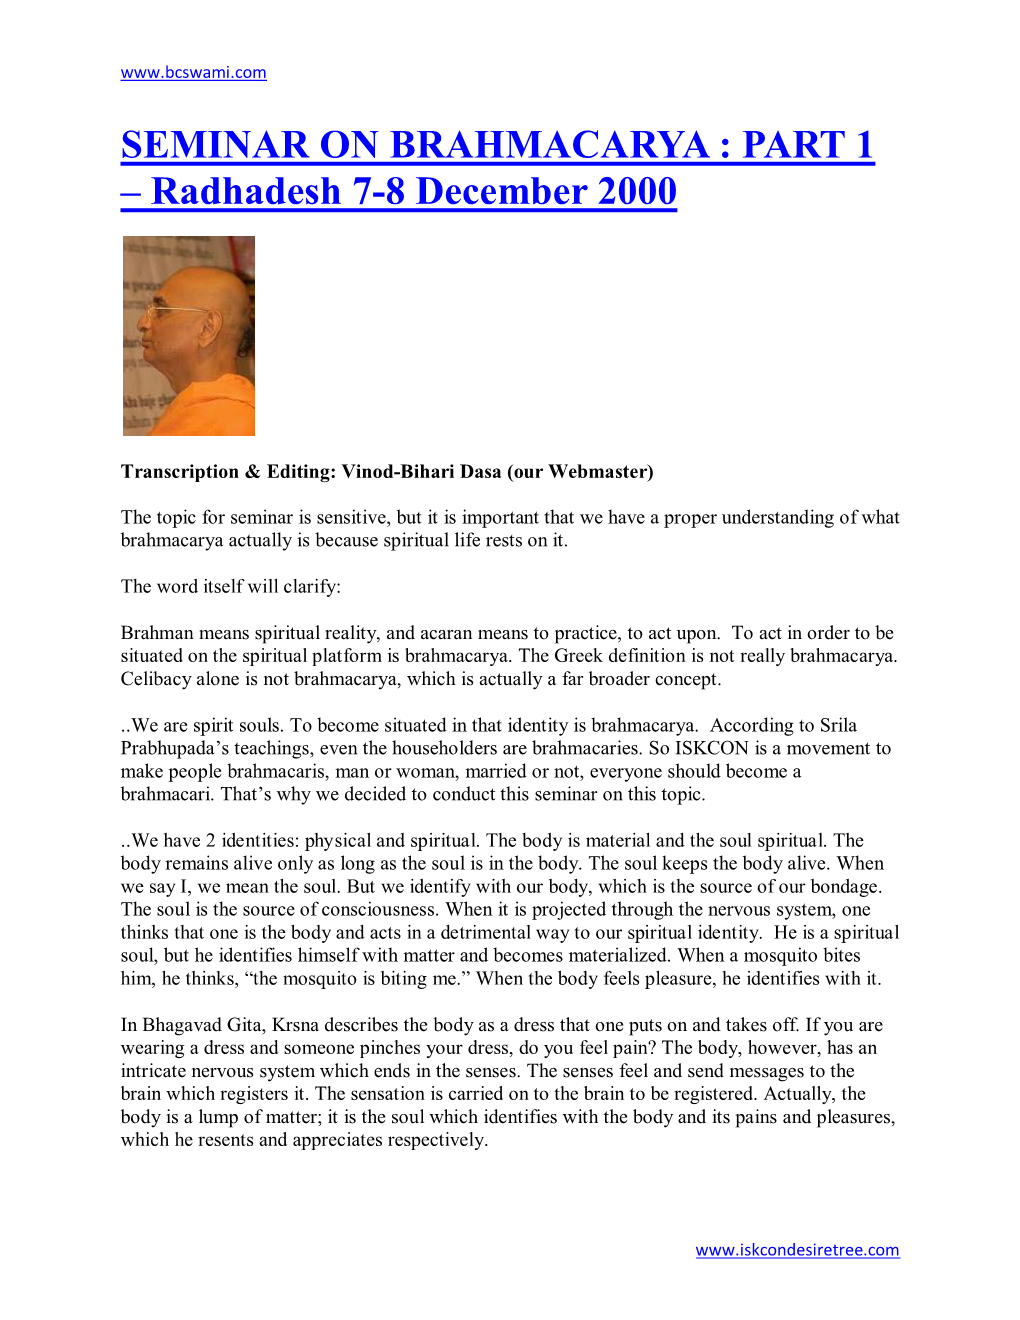 SEMINAR on BRAHMACARYA : PART 1 – Radhadesh 7-8 December 2000